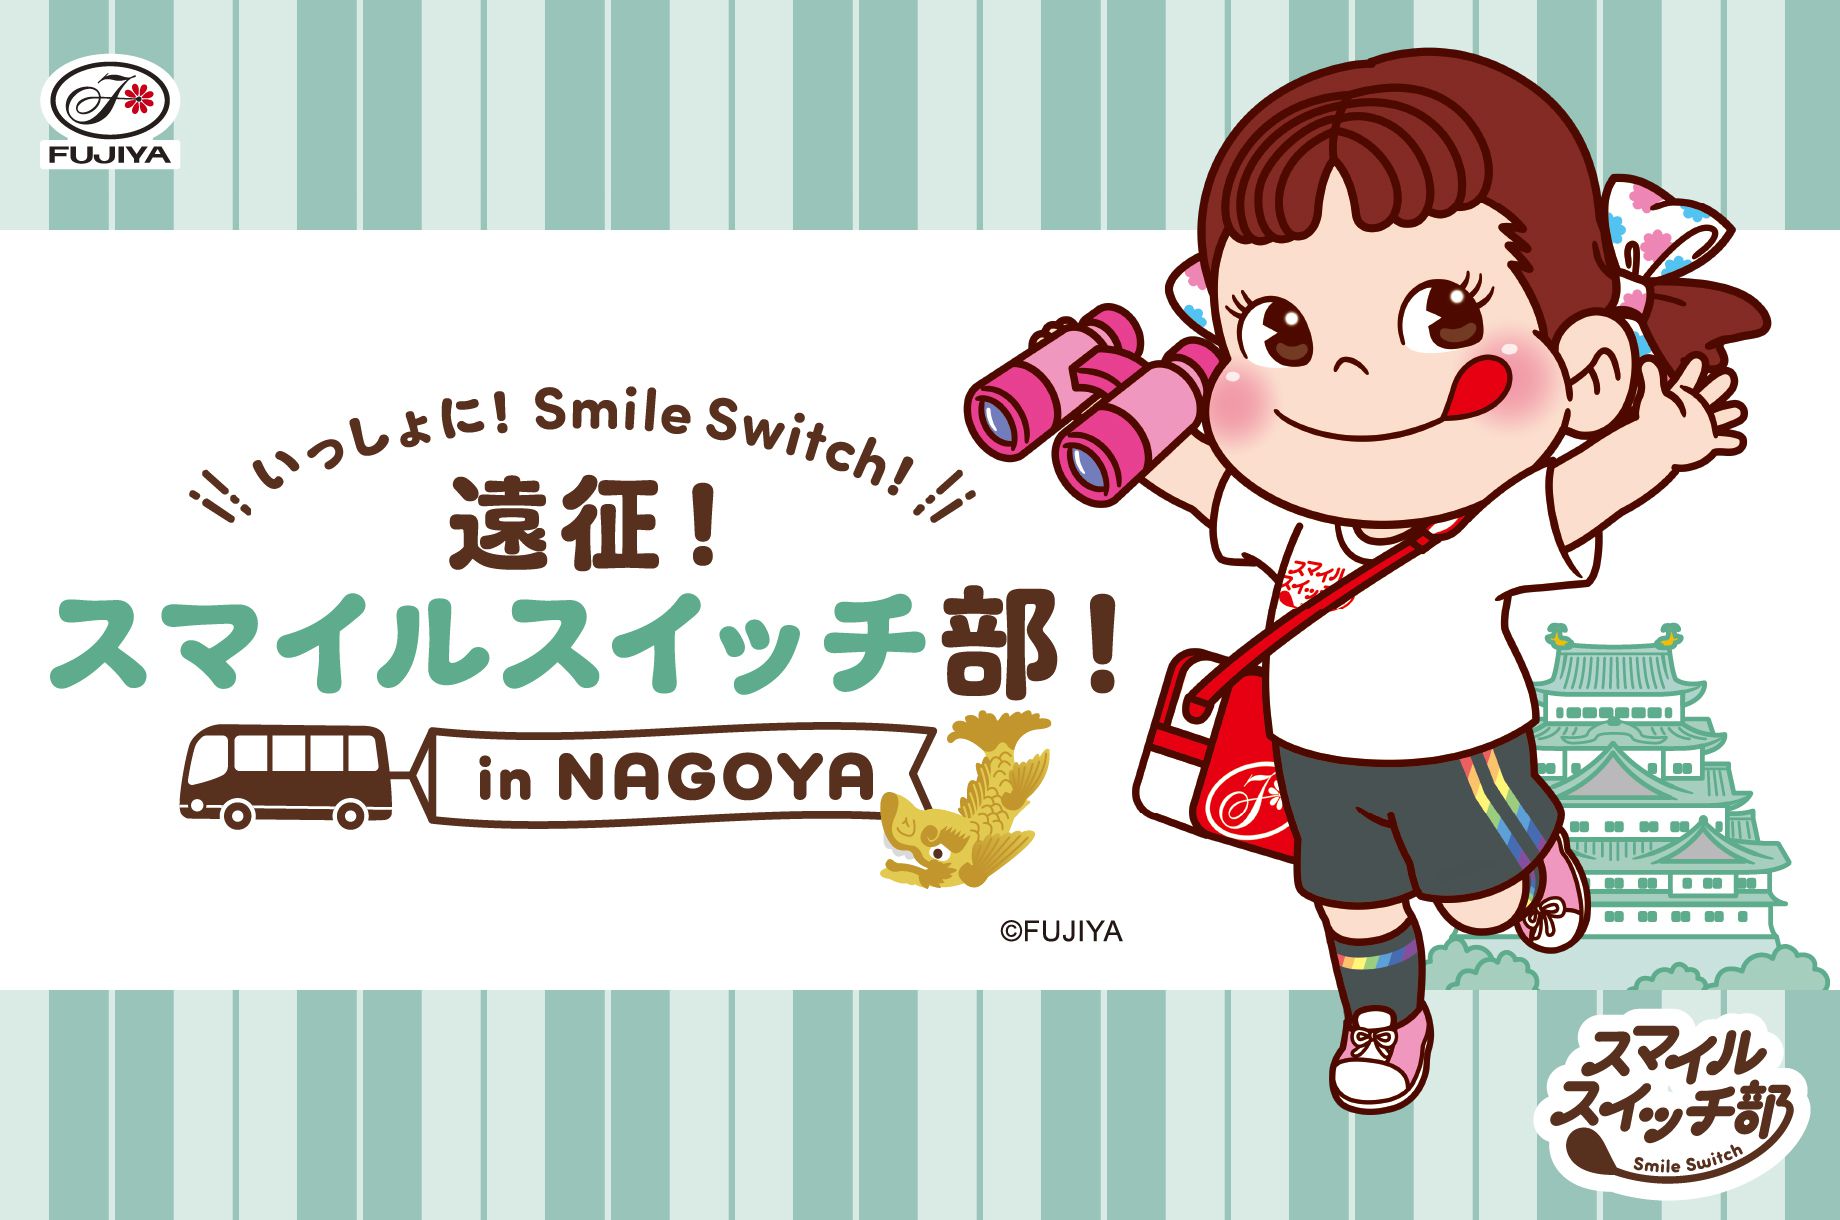 いっしょに！ Smile Switch！ 遠征！スマイルスイッチ部！ in NAGOYA